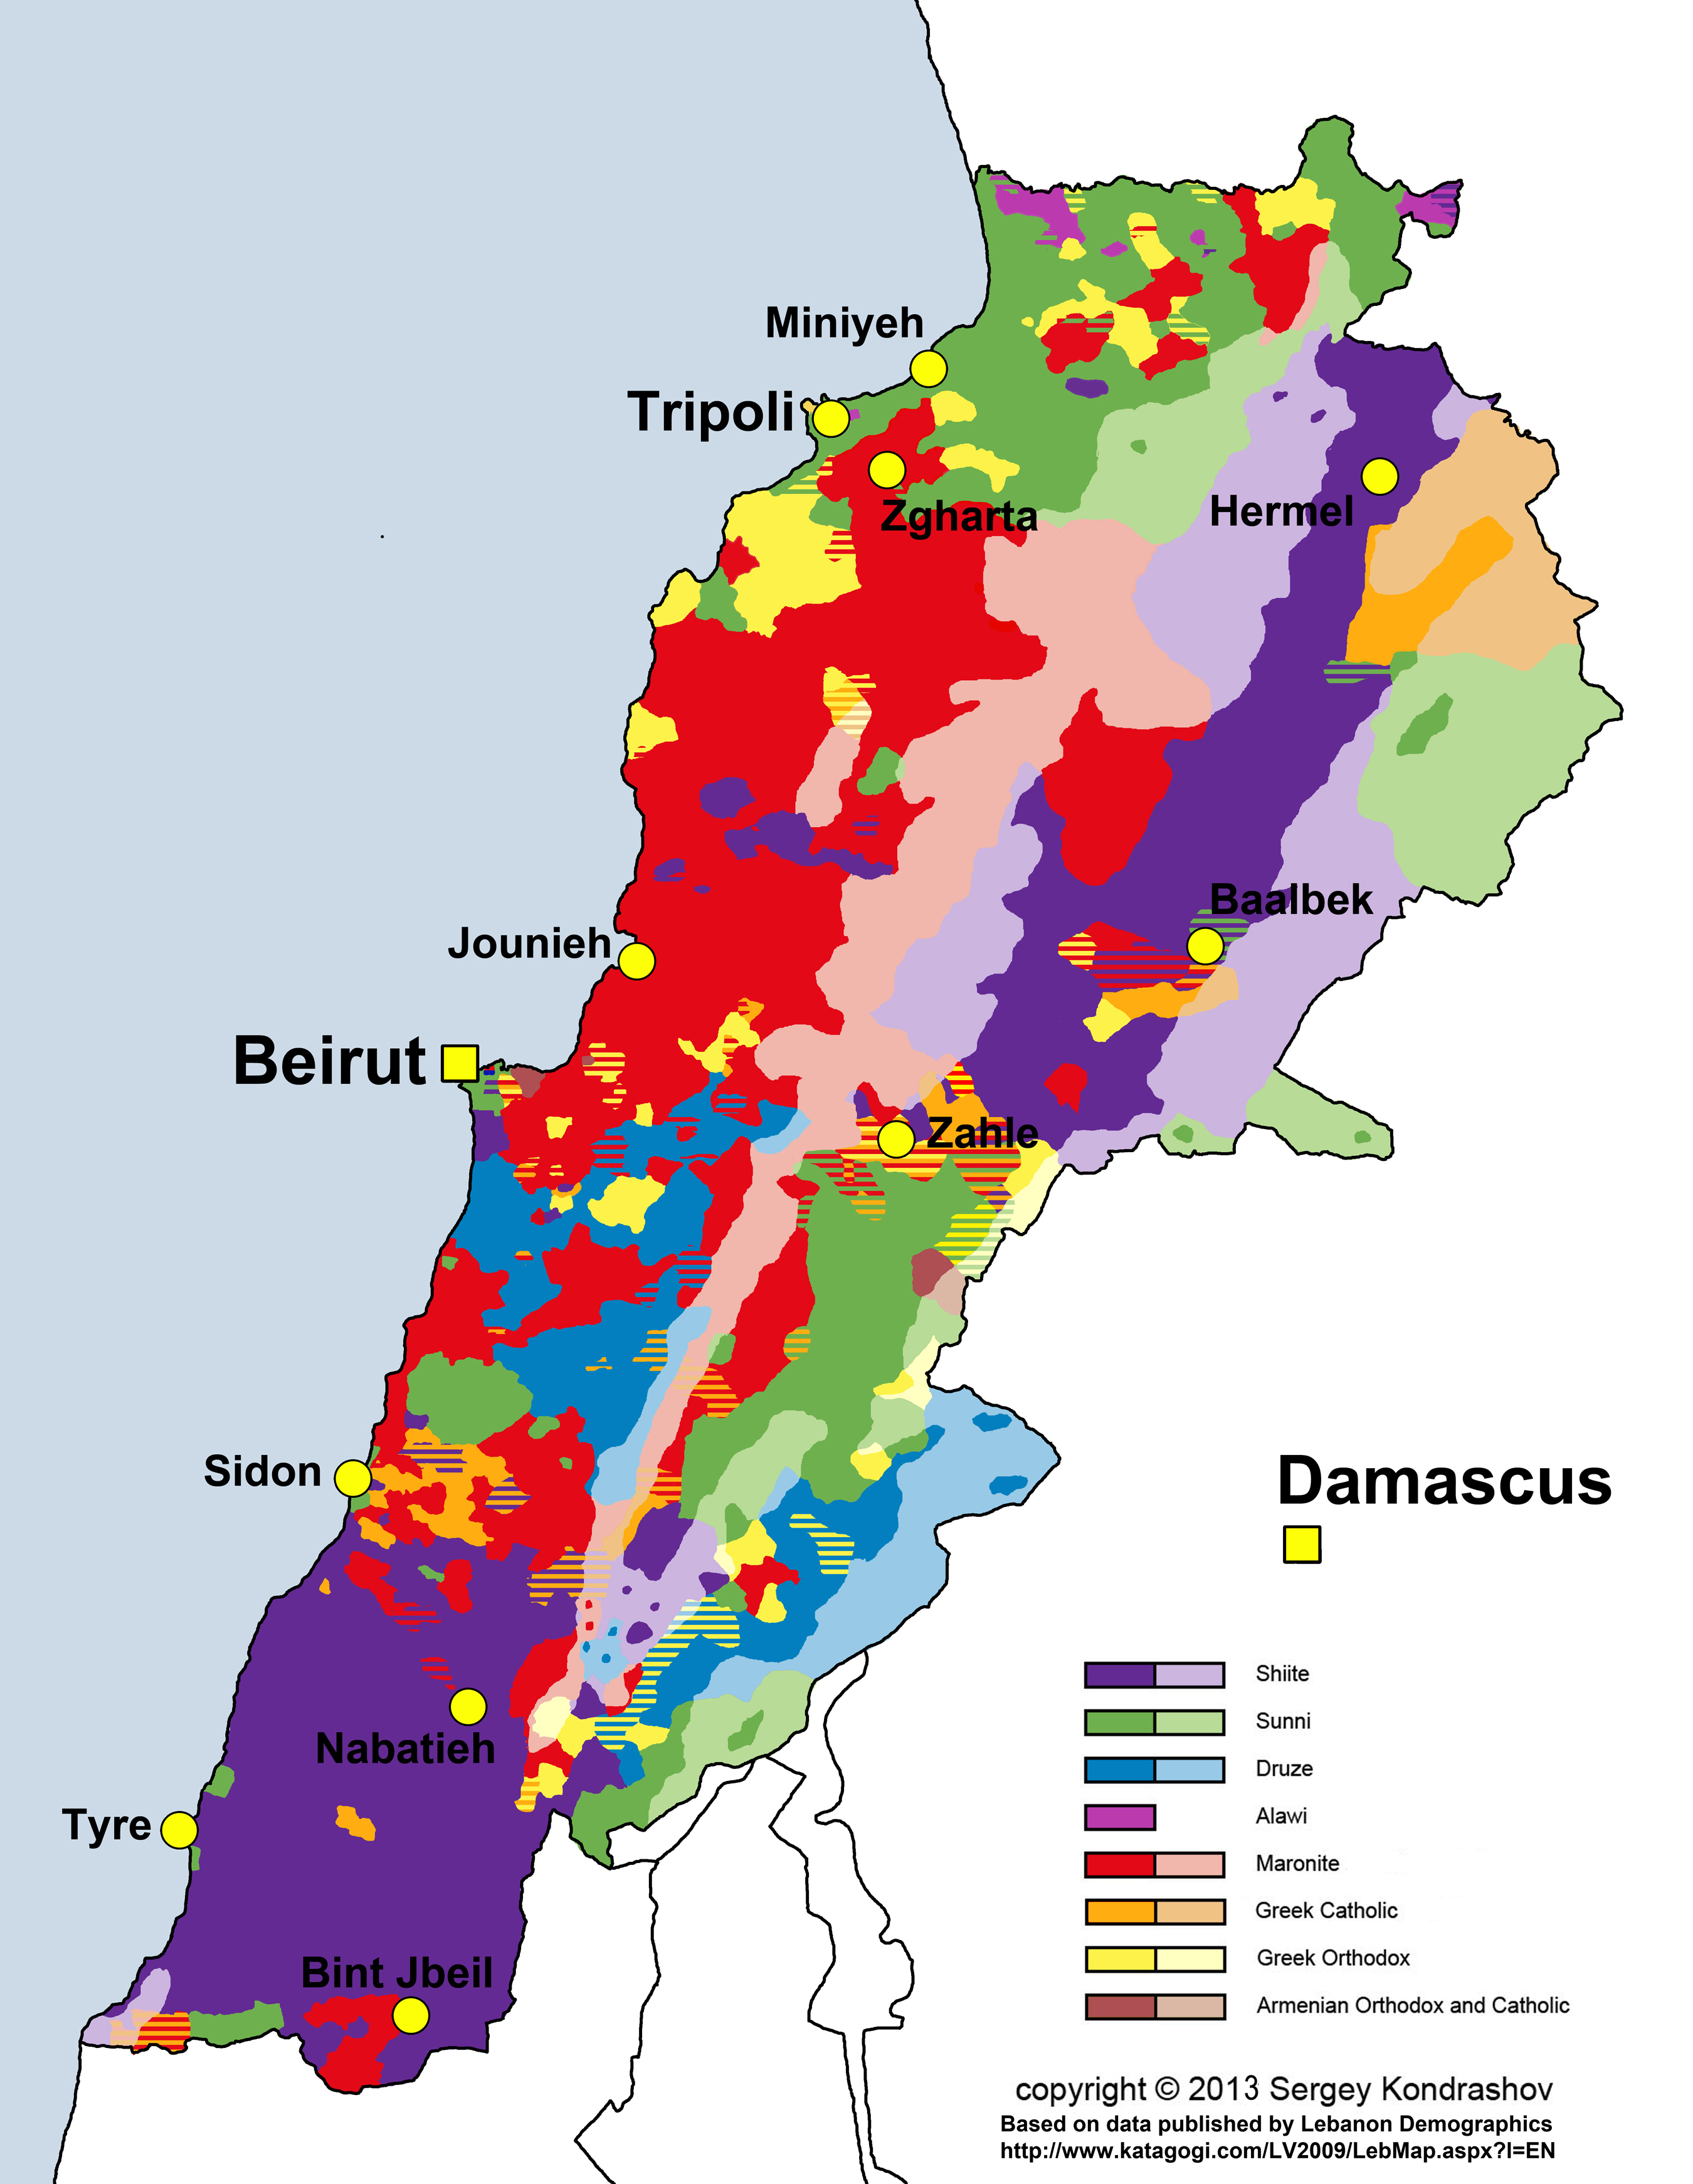 Lebanon religious groups distribution